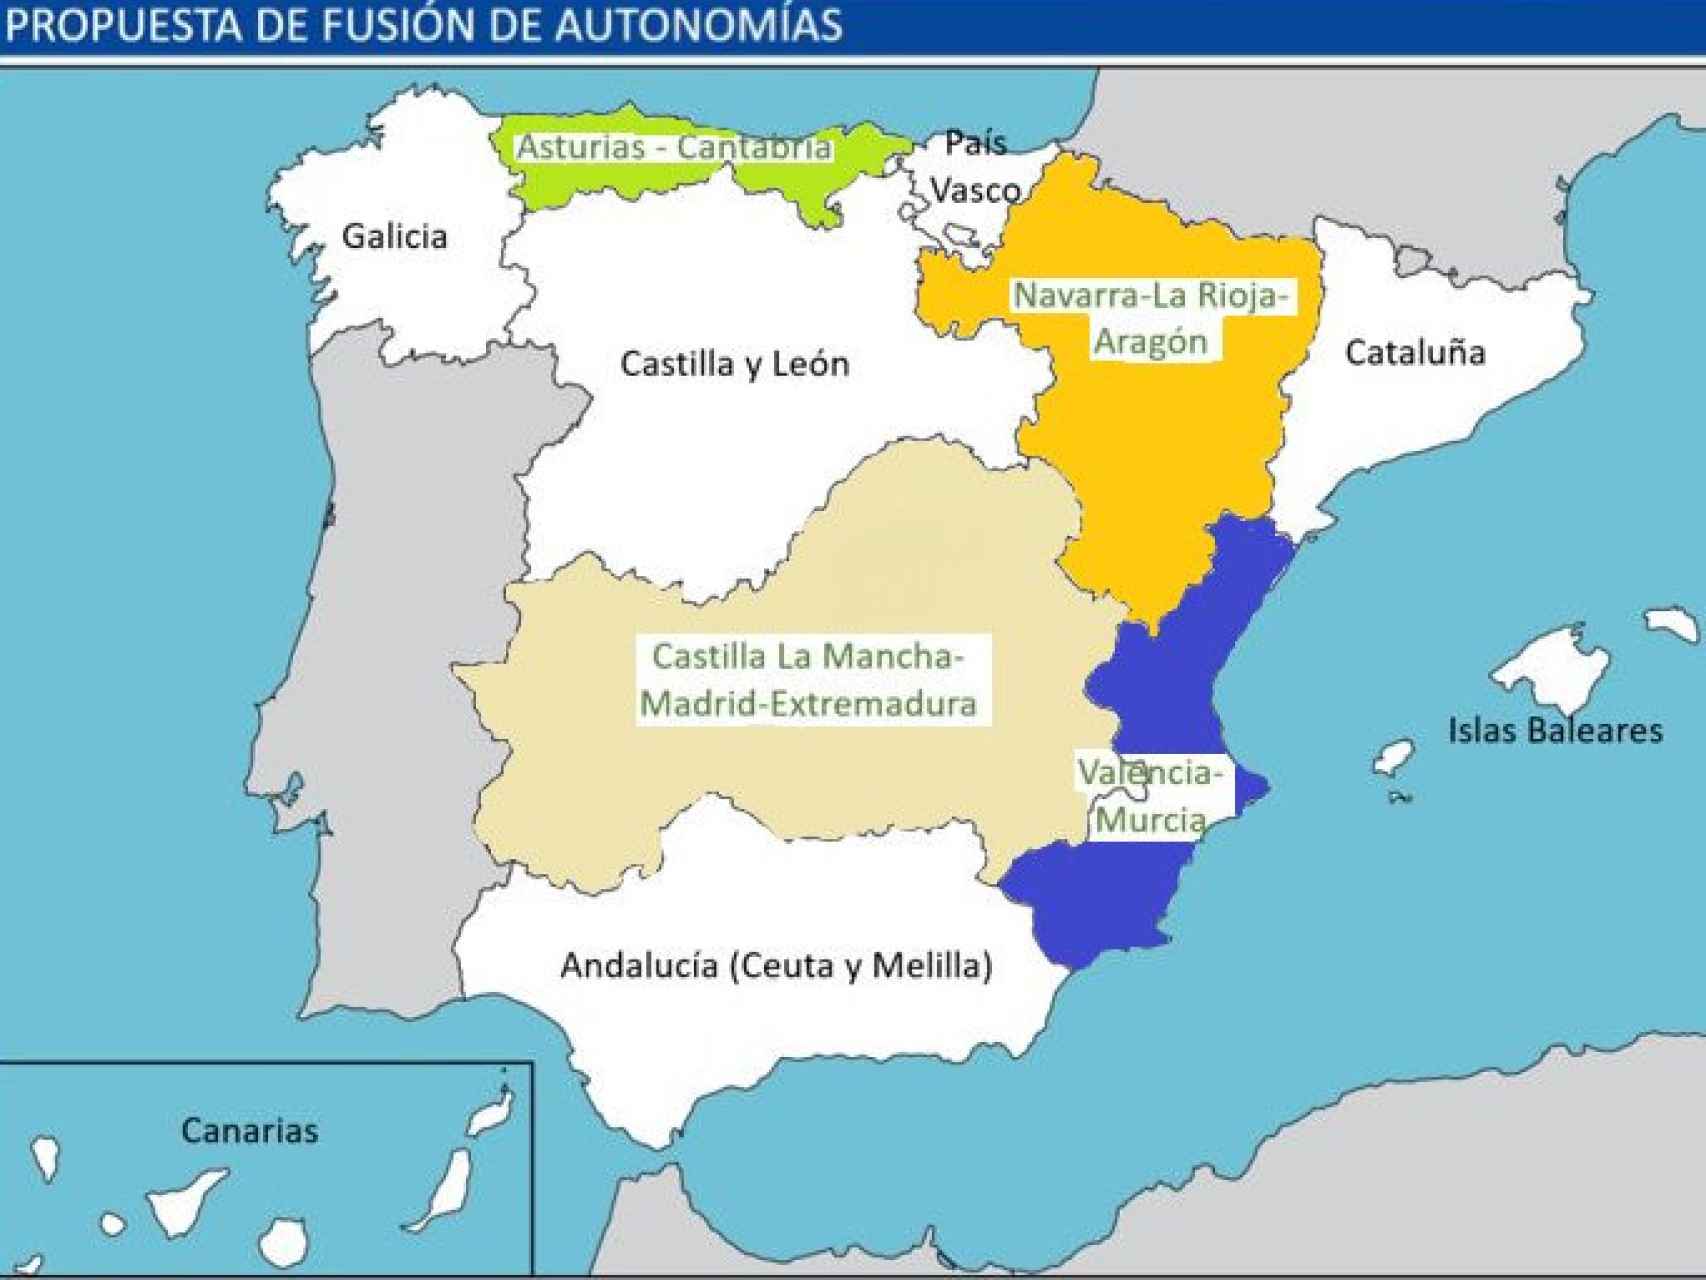 El nuevo mapa de las autonomías que propone el proyecto político 'Iniciativa'.